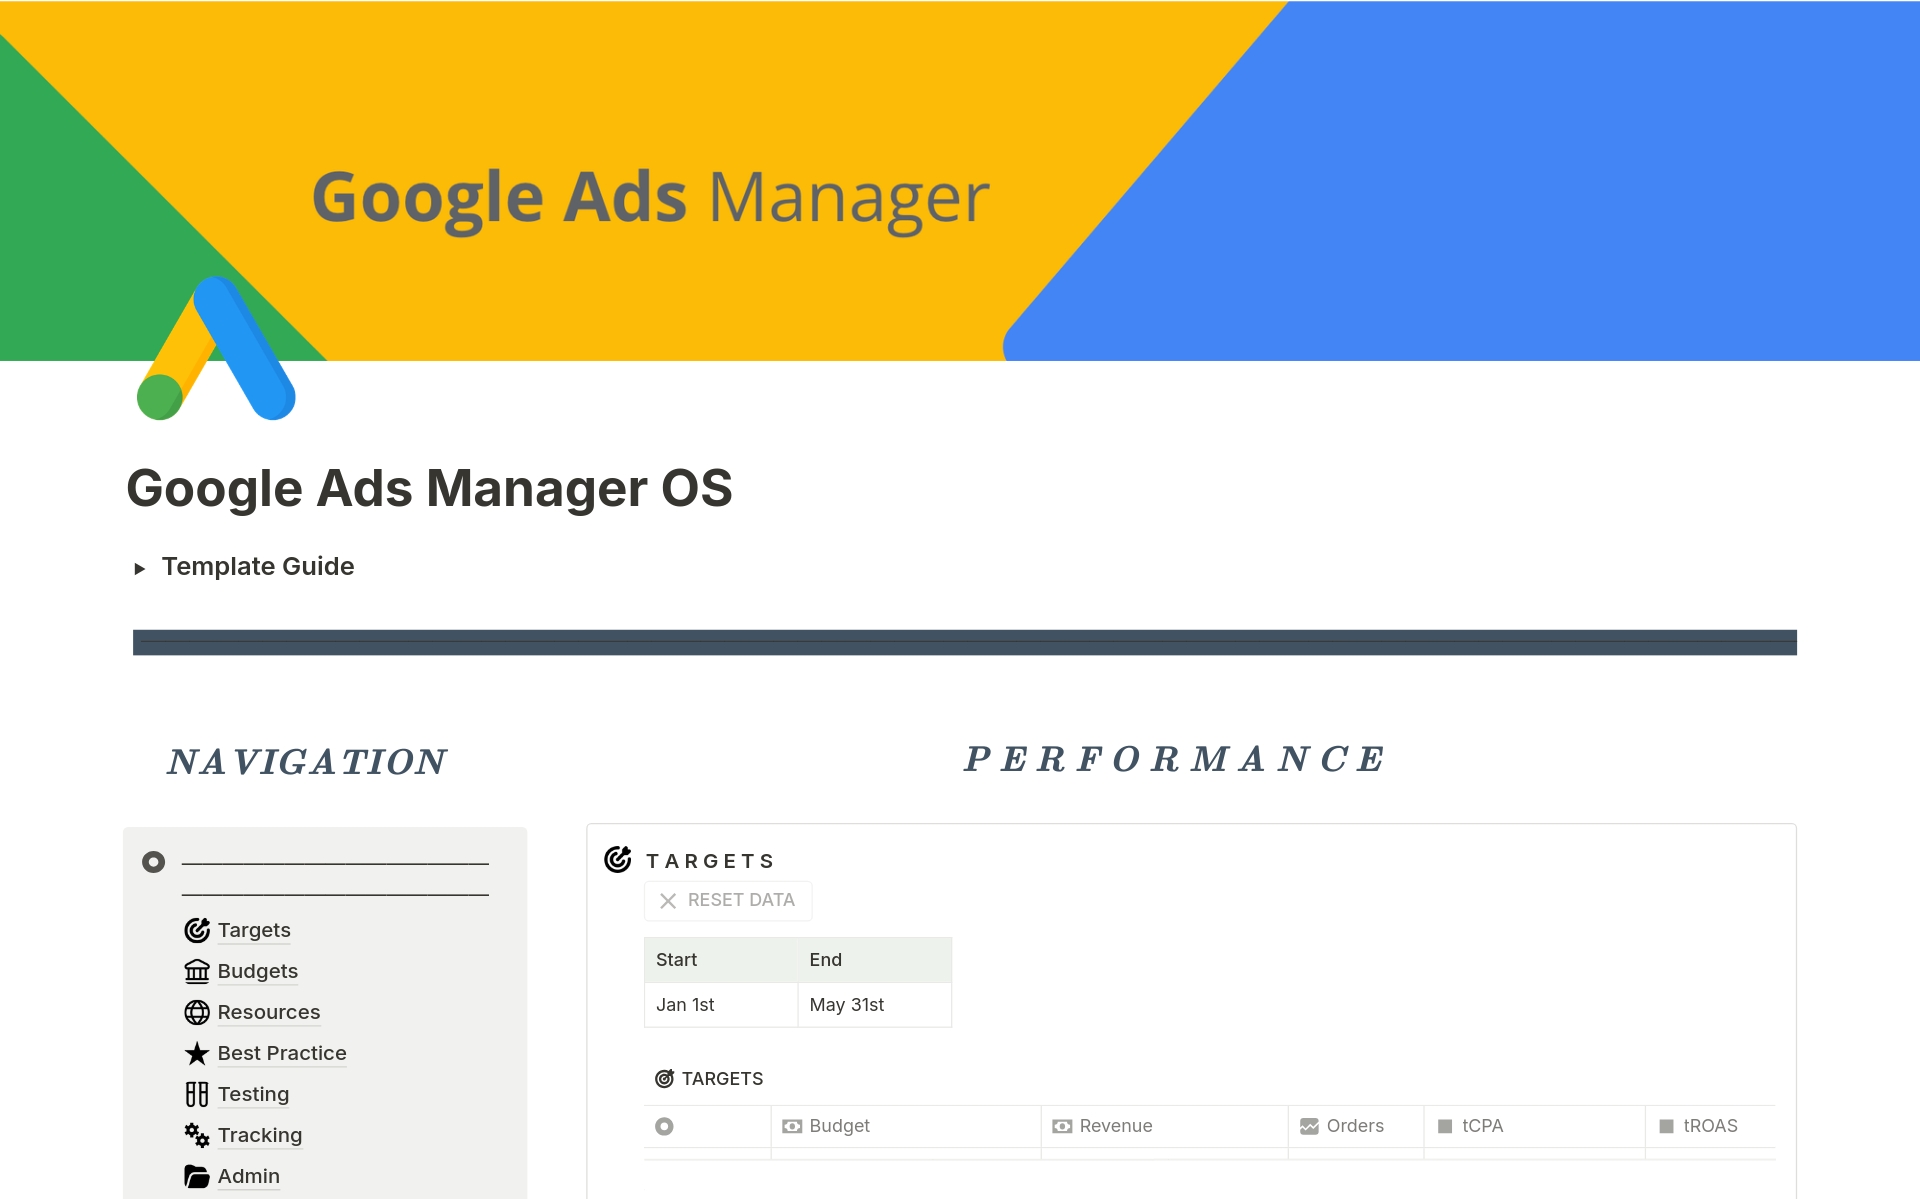 Uma prévia do modelo para Google Ads Manager OS